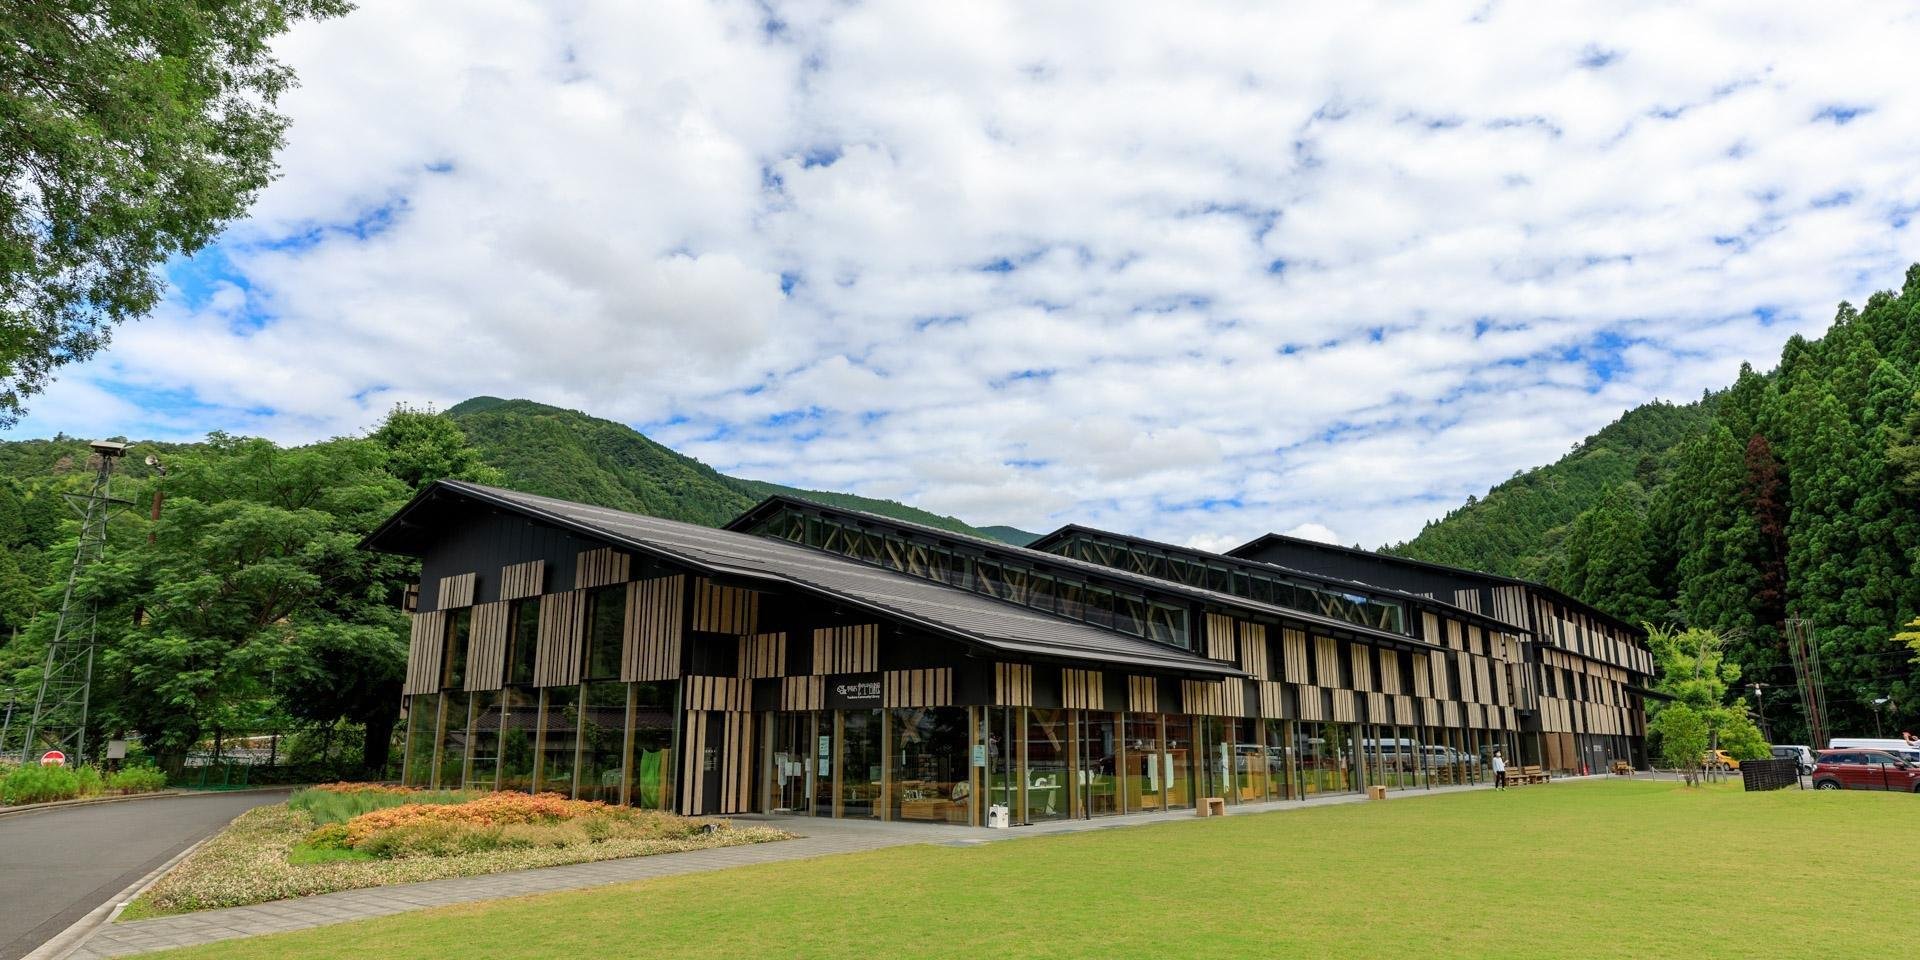 พบกับสิ่งก่อสร้าง 6 แห่งของเคนโกะคุมะสถาปนิกชื่อดังของญี่ปุ่นใน “เมืองเหนือเมฆ-เมืองยุซุฮะระ”